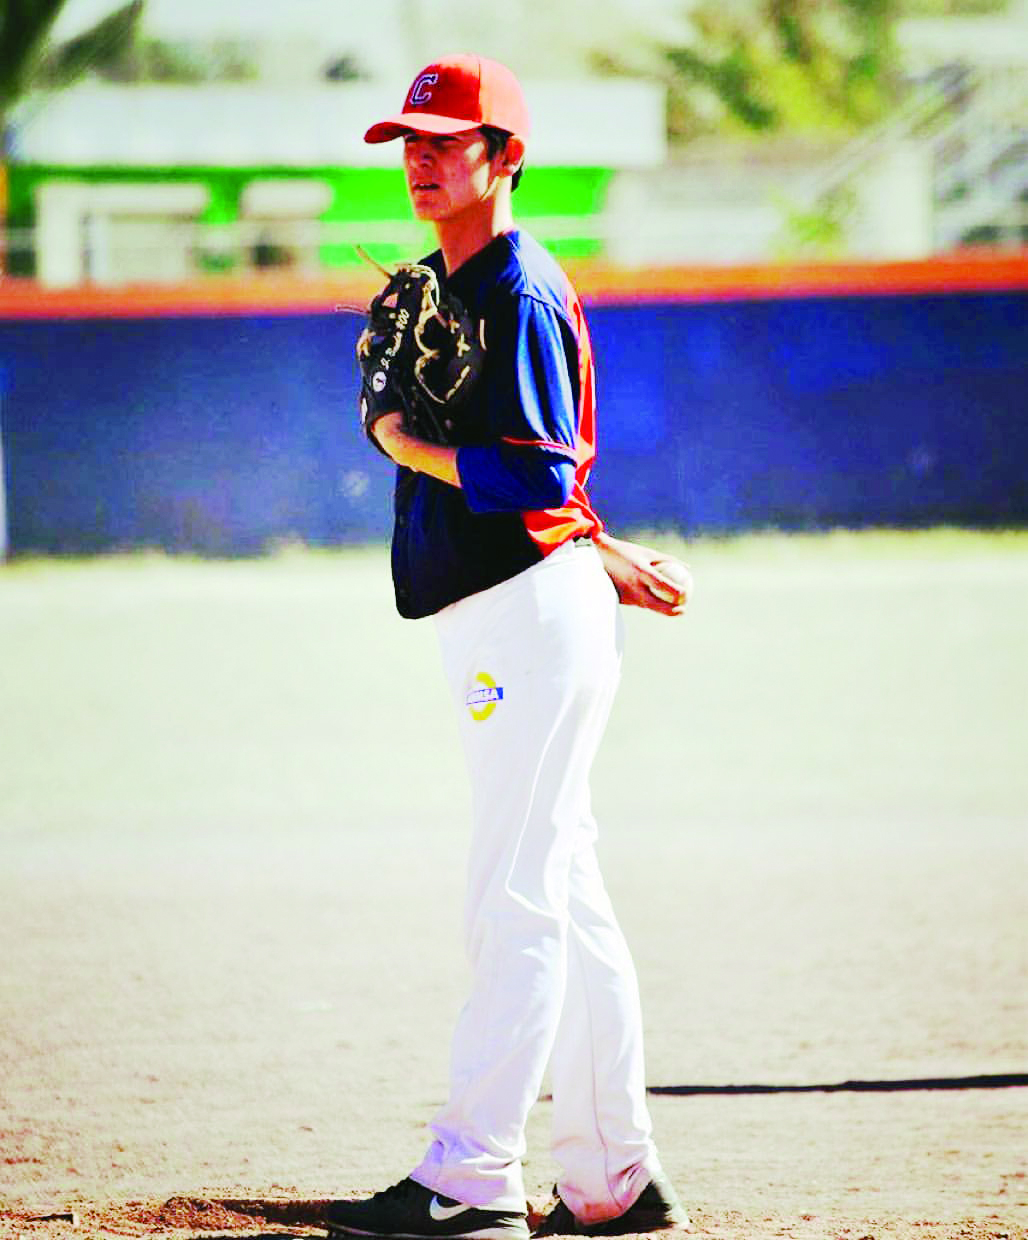 “El Béisbol corre por mis venas”, Joel Adair Banda Rodríguez